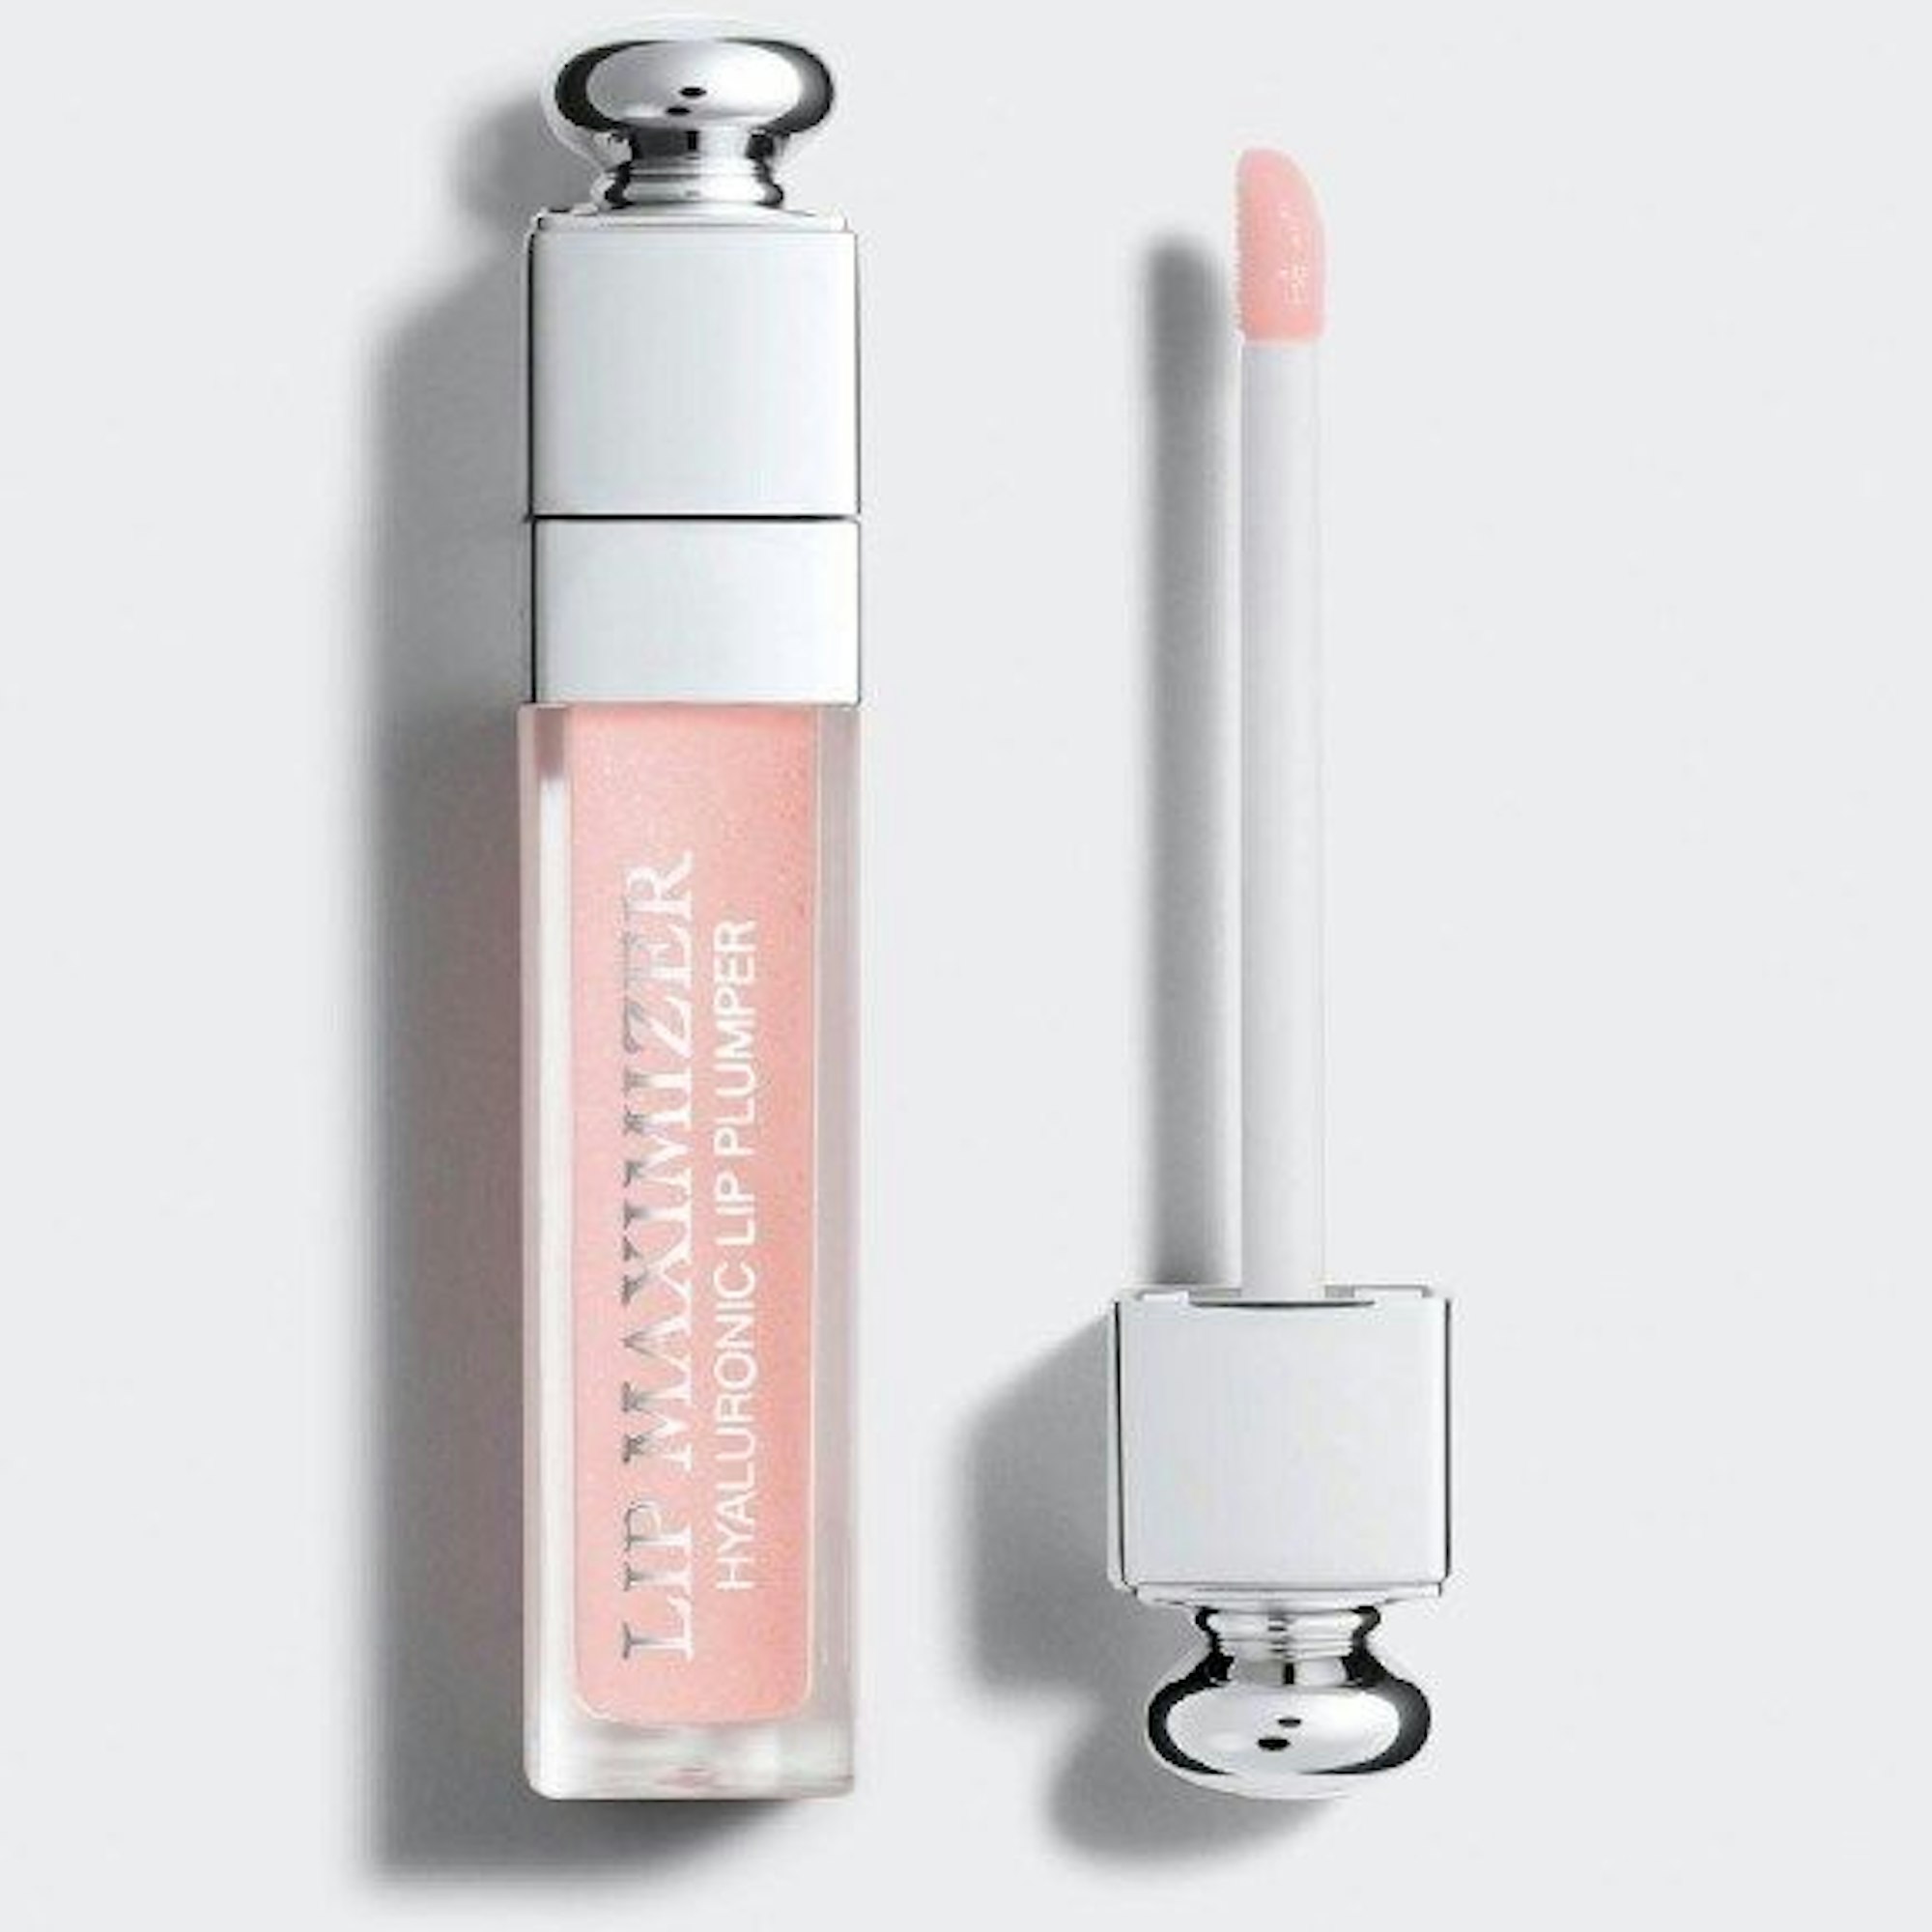 Ein Dior Addict Lip Maximizer liegt geöffnet auf einem weißen Hintergrund.